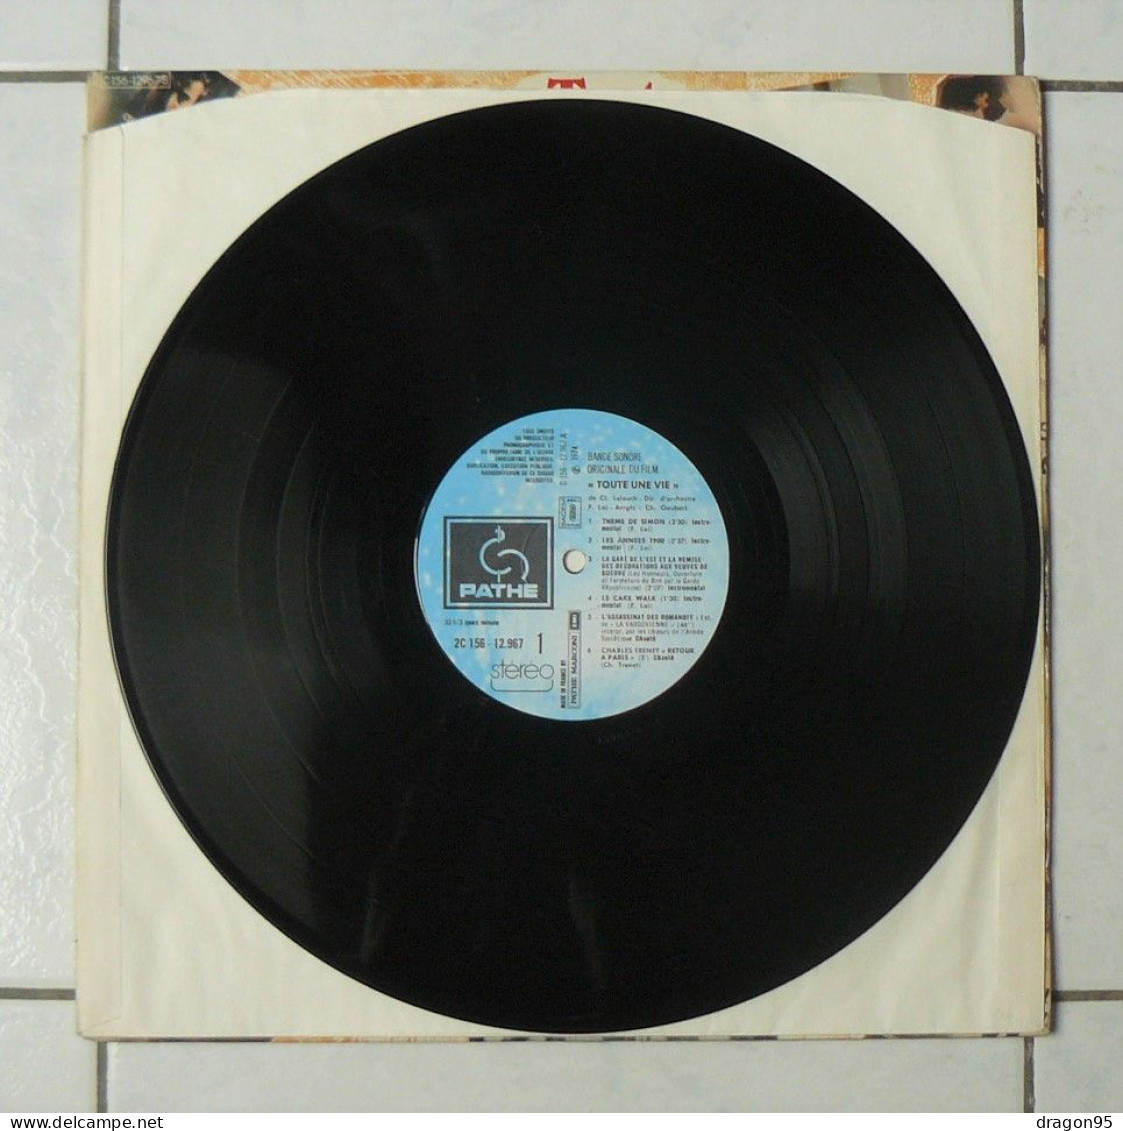 2 LPs Francis LAI : B.O. Toute Une Vie - Pathé 2C156-12967/8 - France - 1974 - Música De Peliculas